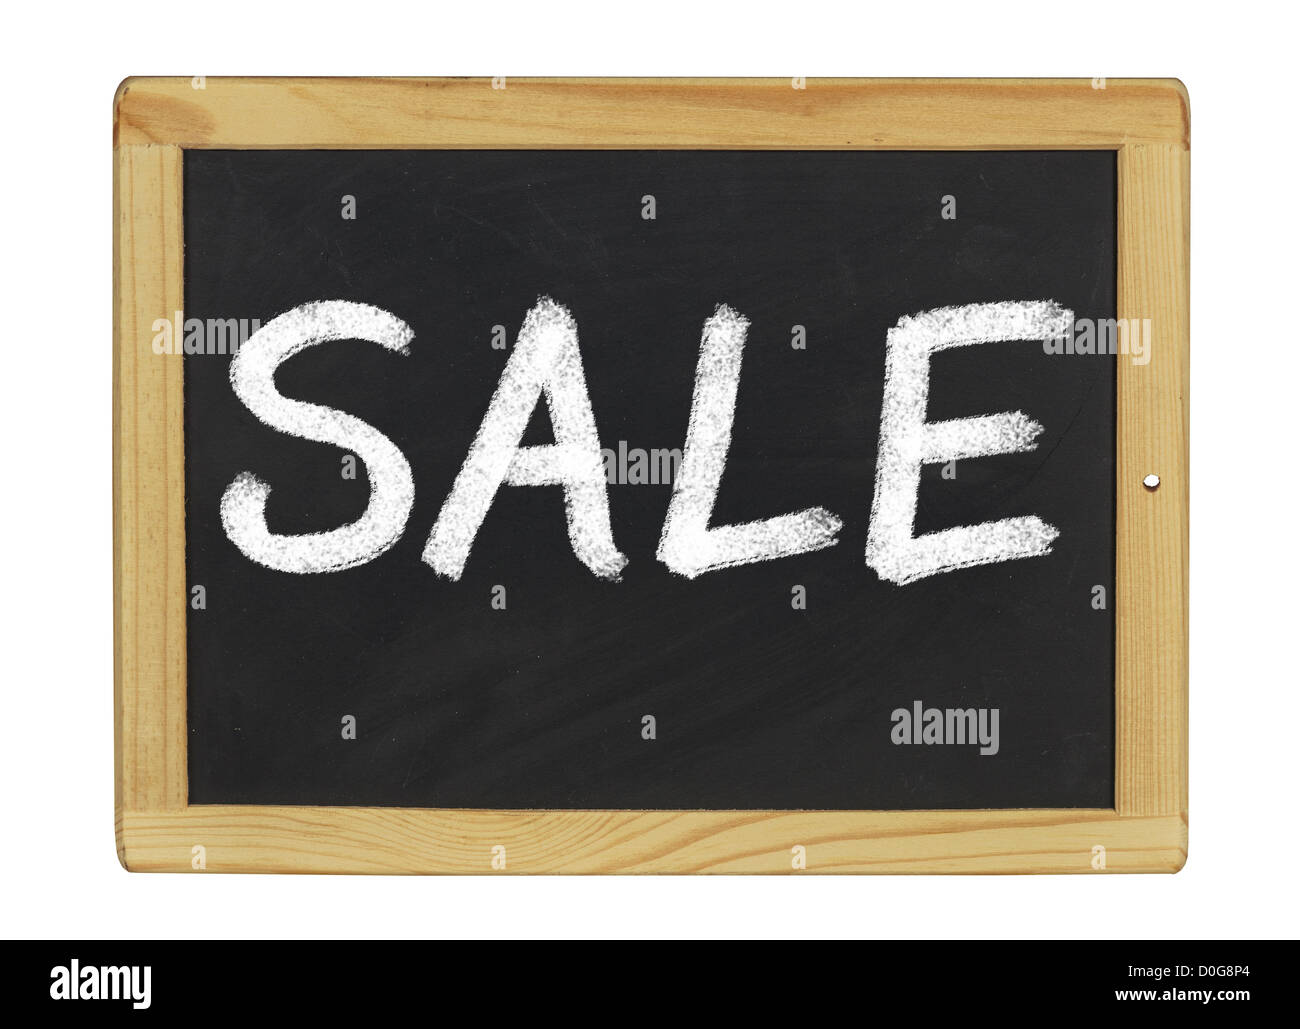 blackboard with Sale written on it Stock Photo